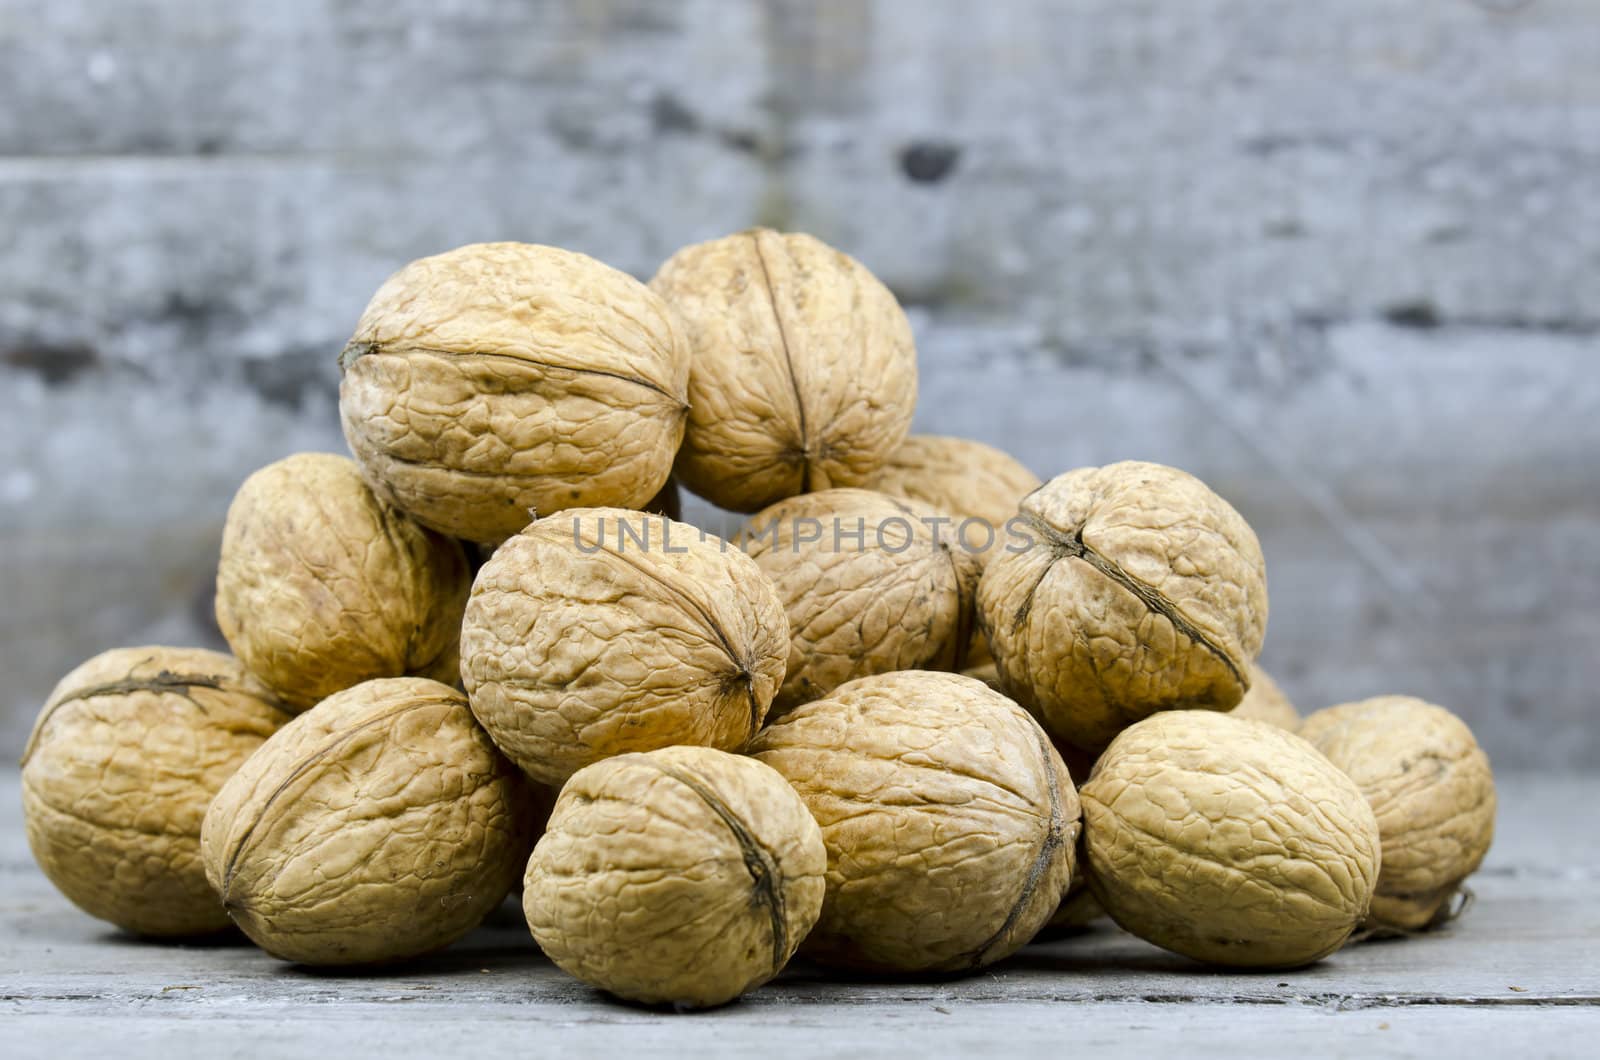 nuts in bulk by gufoto